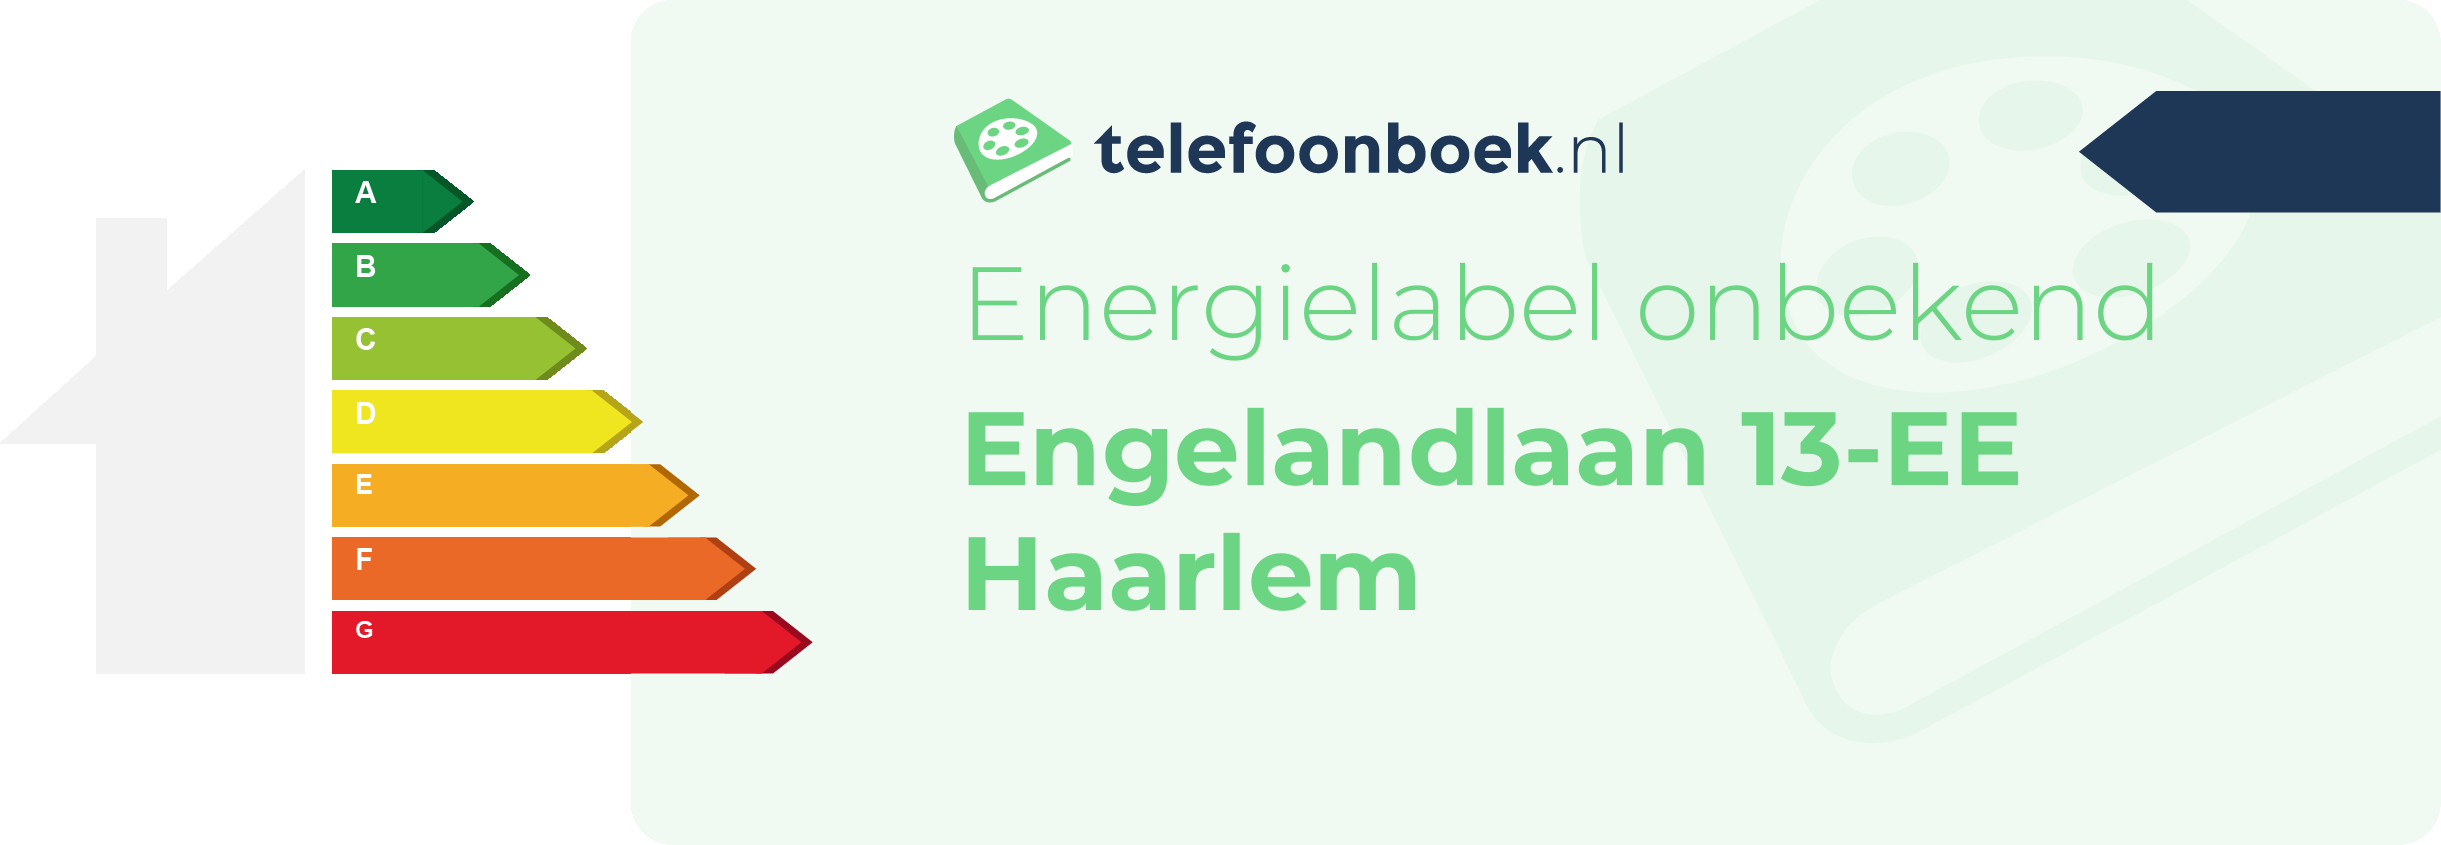 Energielabel Engelandlaan 13-EE Haarlem